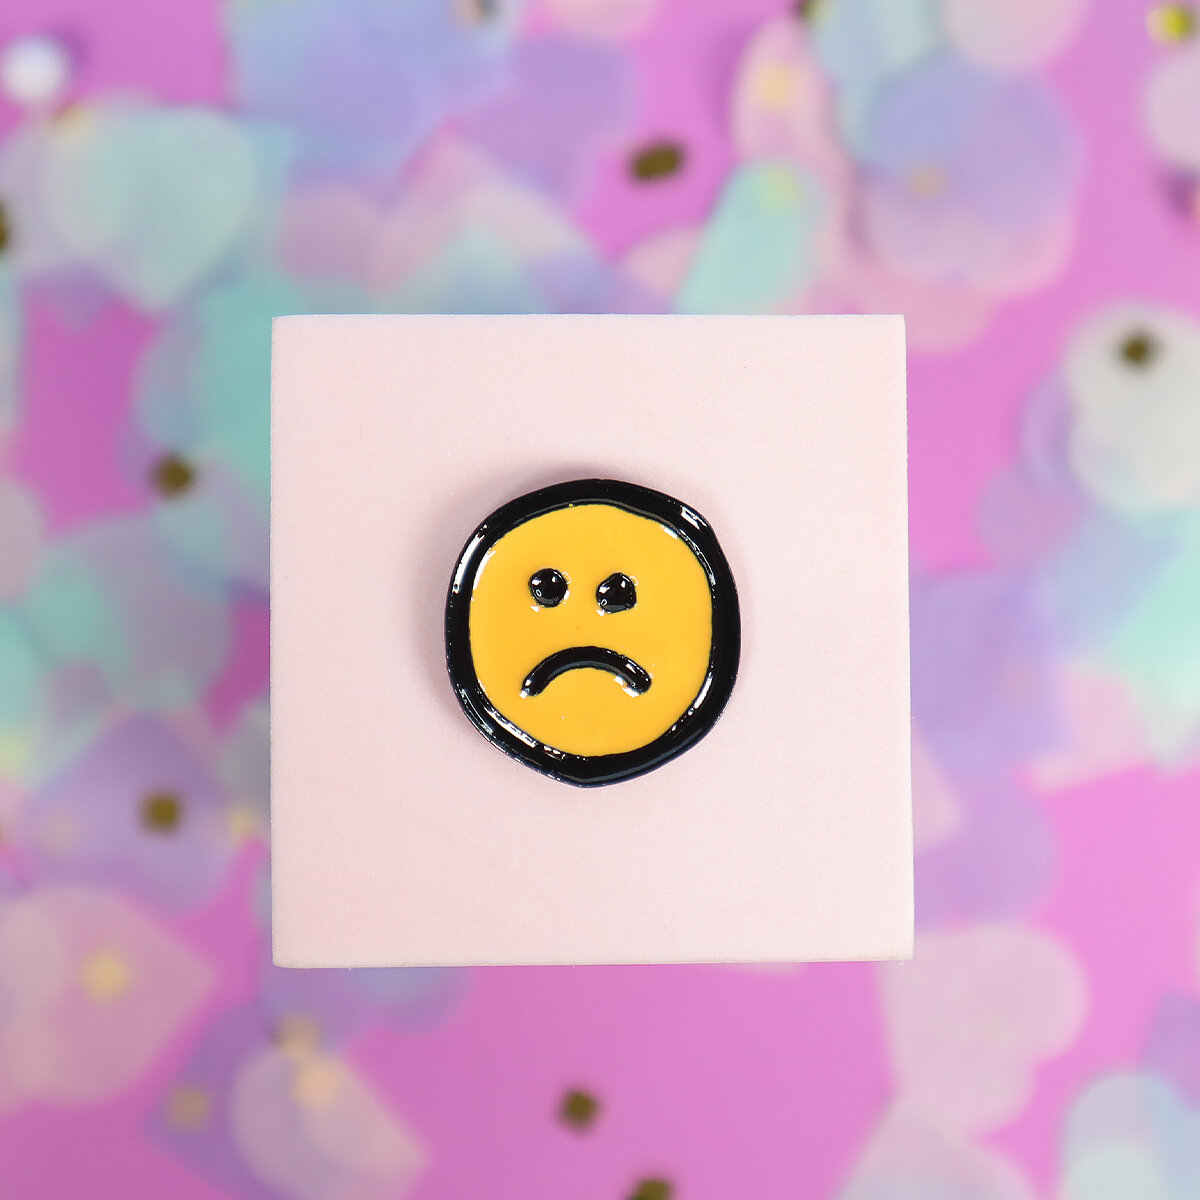 Pin - Sad smiley